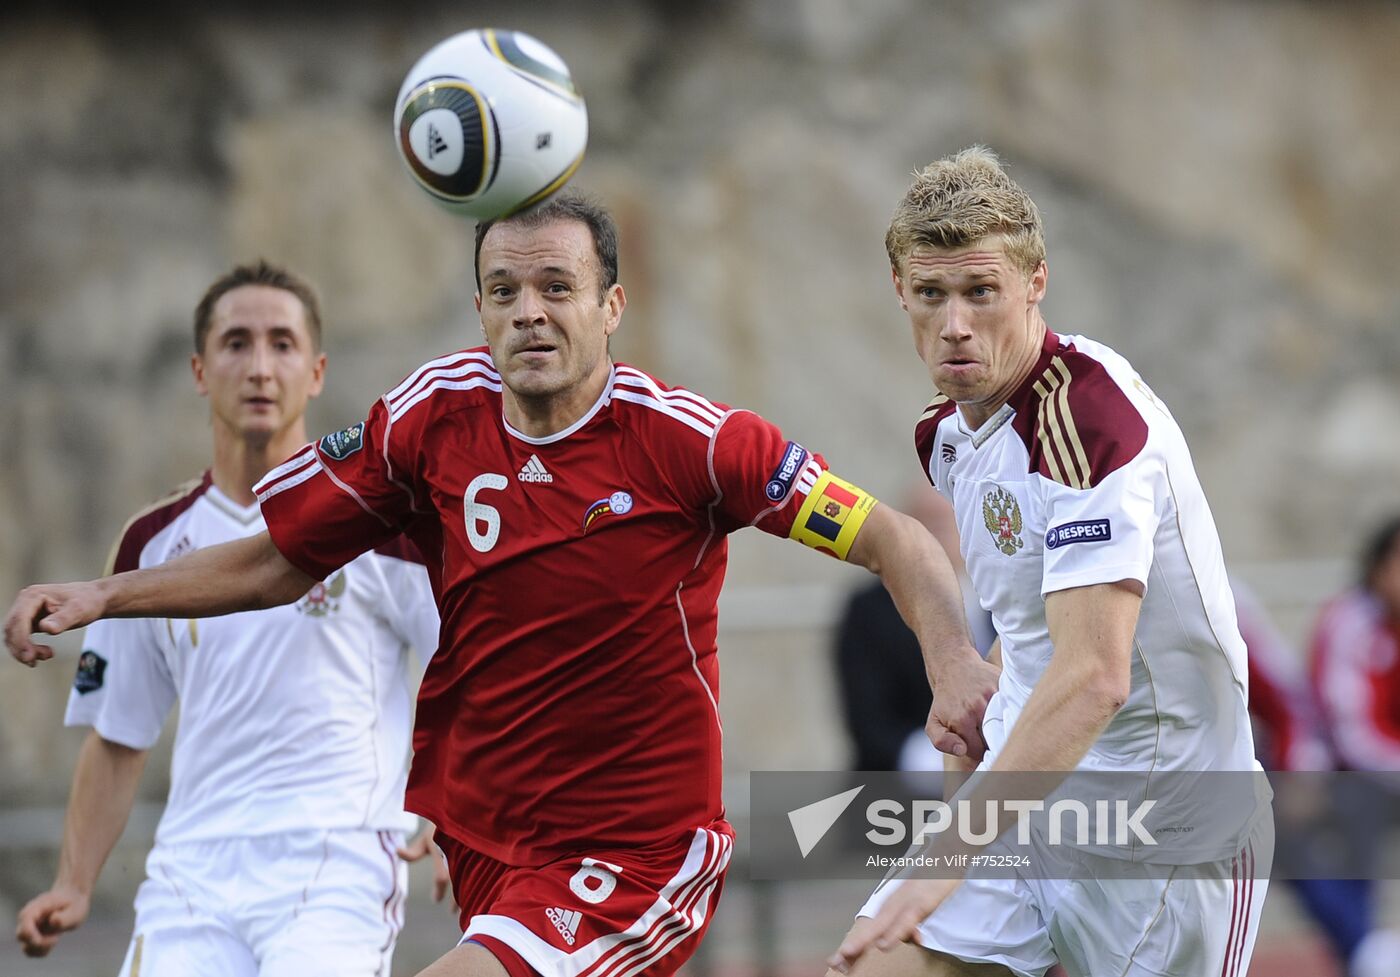 UEFA Euro 2012 qualifier. Andorra vs. Russia